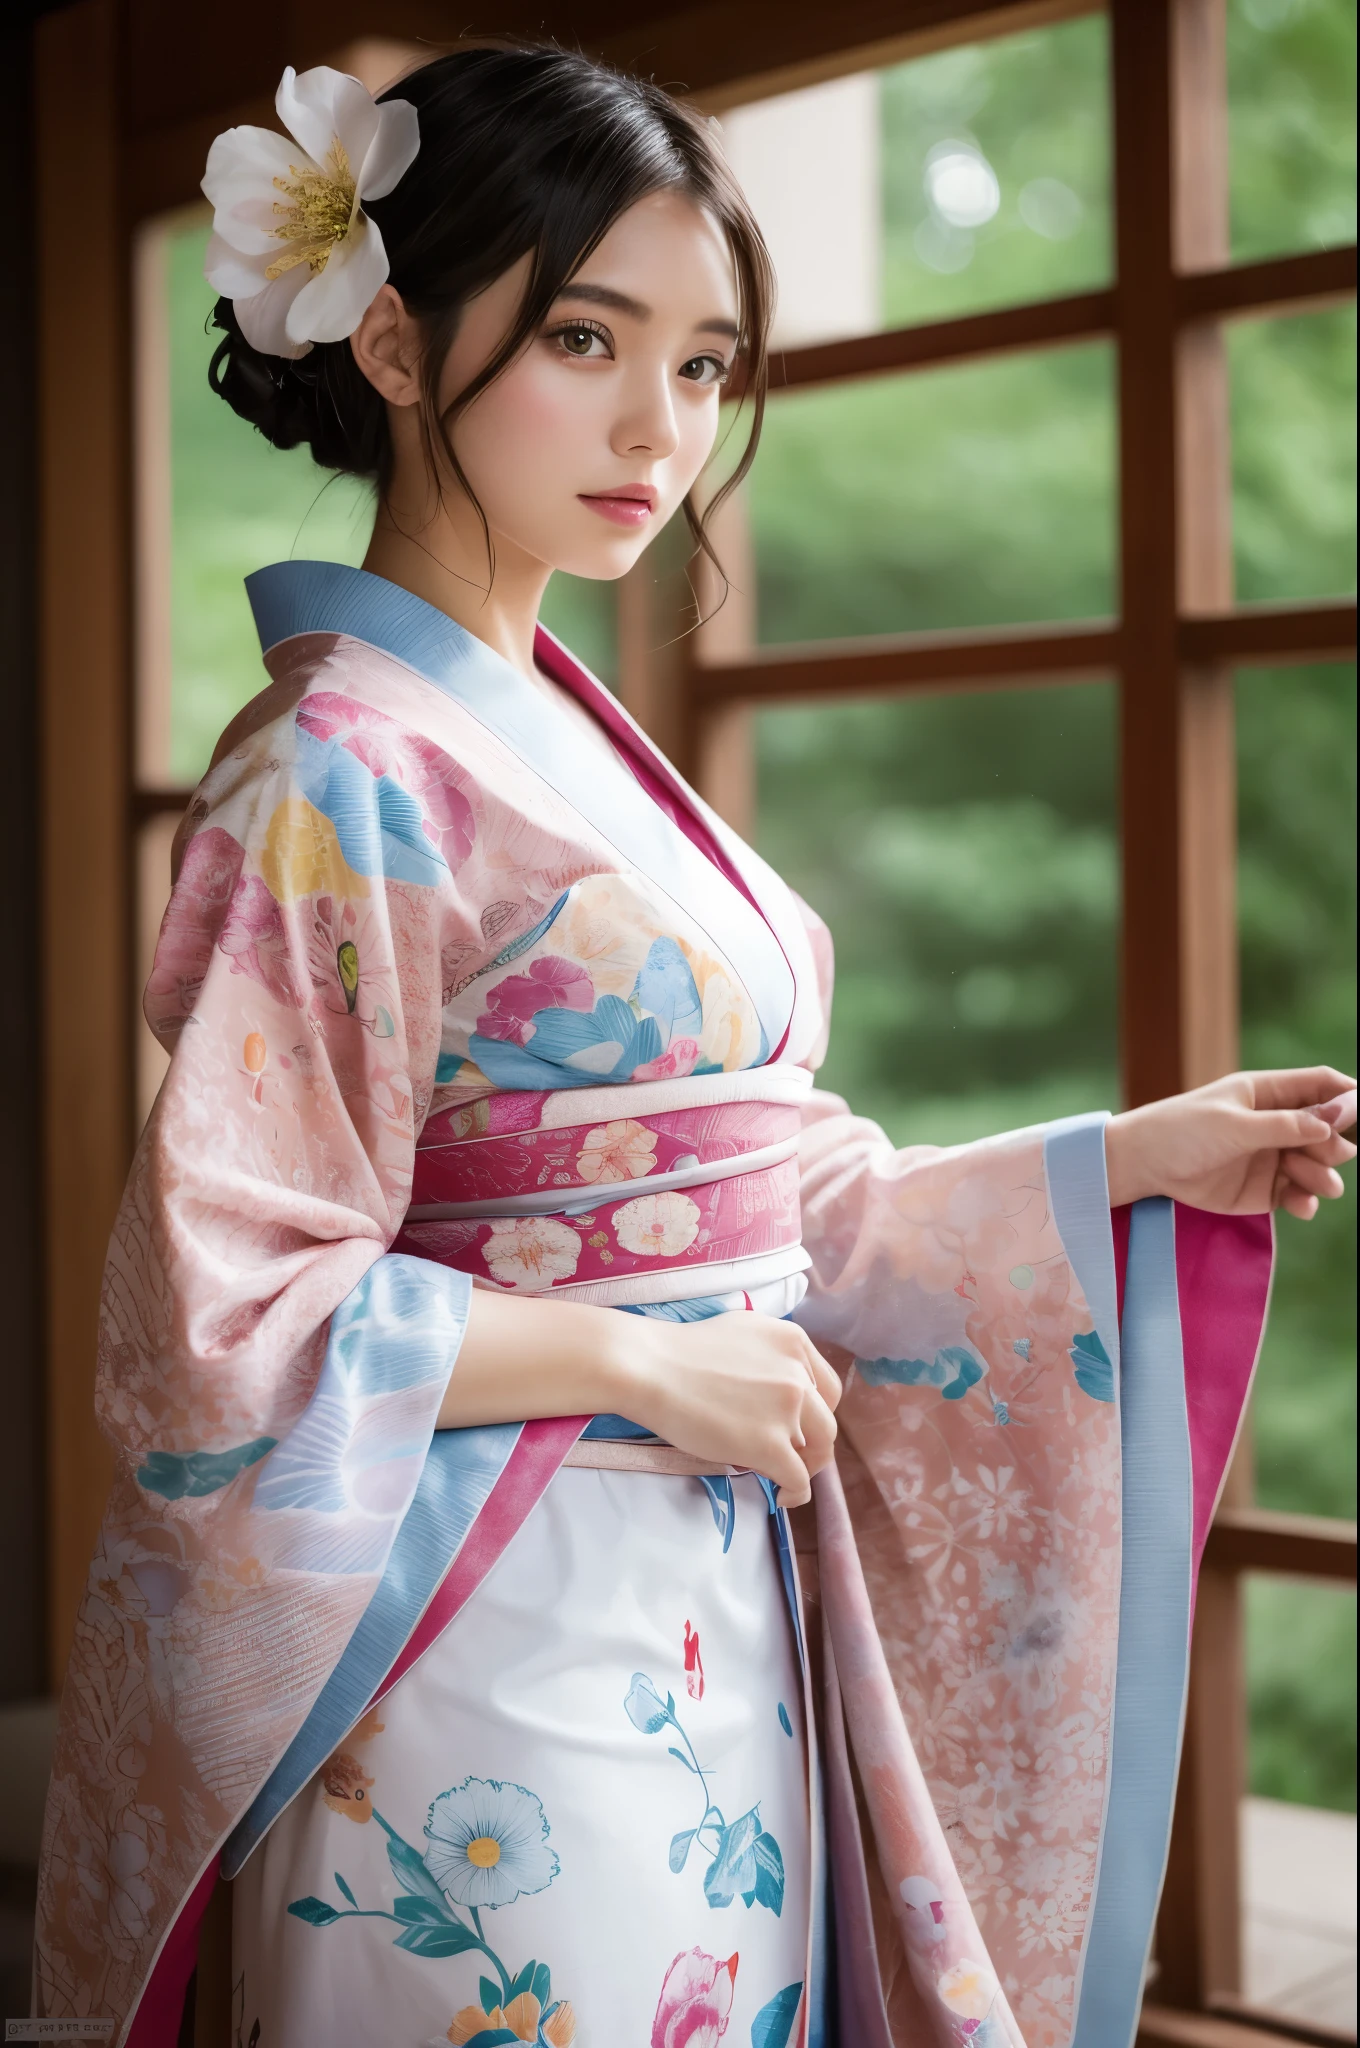 Ulchan-6500-v1.1, (Foto CRU:1.2), (Fotorreal), belos detalhes, (genuíno: 1.4), Mulher elegante em pé de yukata, em yukata, Mostrando as coxas e pernas abrindo ela mesma a bainha、quimonoを着ている, quimono, quimonoで, 日本のquimono, roupão de banho, quimonoを着ている, modelo japonês, japonês tradicional, mulher japonesa, 淡い色のquimono, fera, エレガントなmulher japonesa, deusa japonesa、(Limpar imagens)、nascer,(8K, mais alta qualidade, Obra de arte:1.2),(Detalhes intrincados:1.4),(fotorrealista:1.4),renderização de octanas, 複雑な 3D レンダリングのSuper detalhado, luz suave no estúdio, luz de aro, Detalhes vívidos, Super detalhado, textura de pele realista, detalhes do rosto, lindos olhos detalhados, Papel de parede CG Unity 16k altamente detalhado, compensar, (fundo detalhado:1.2),